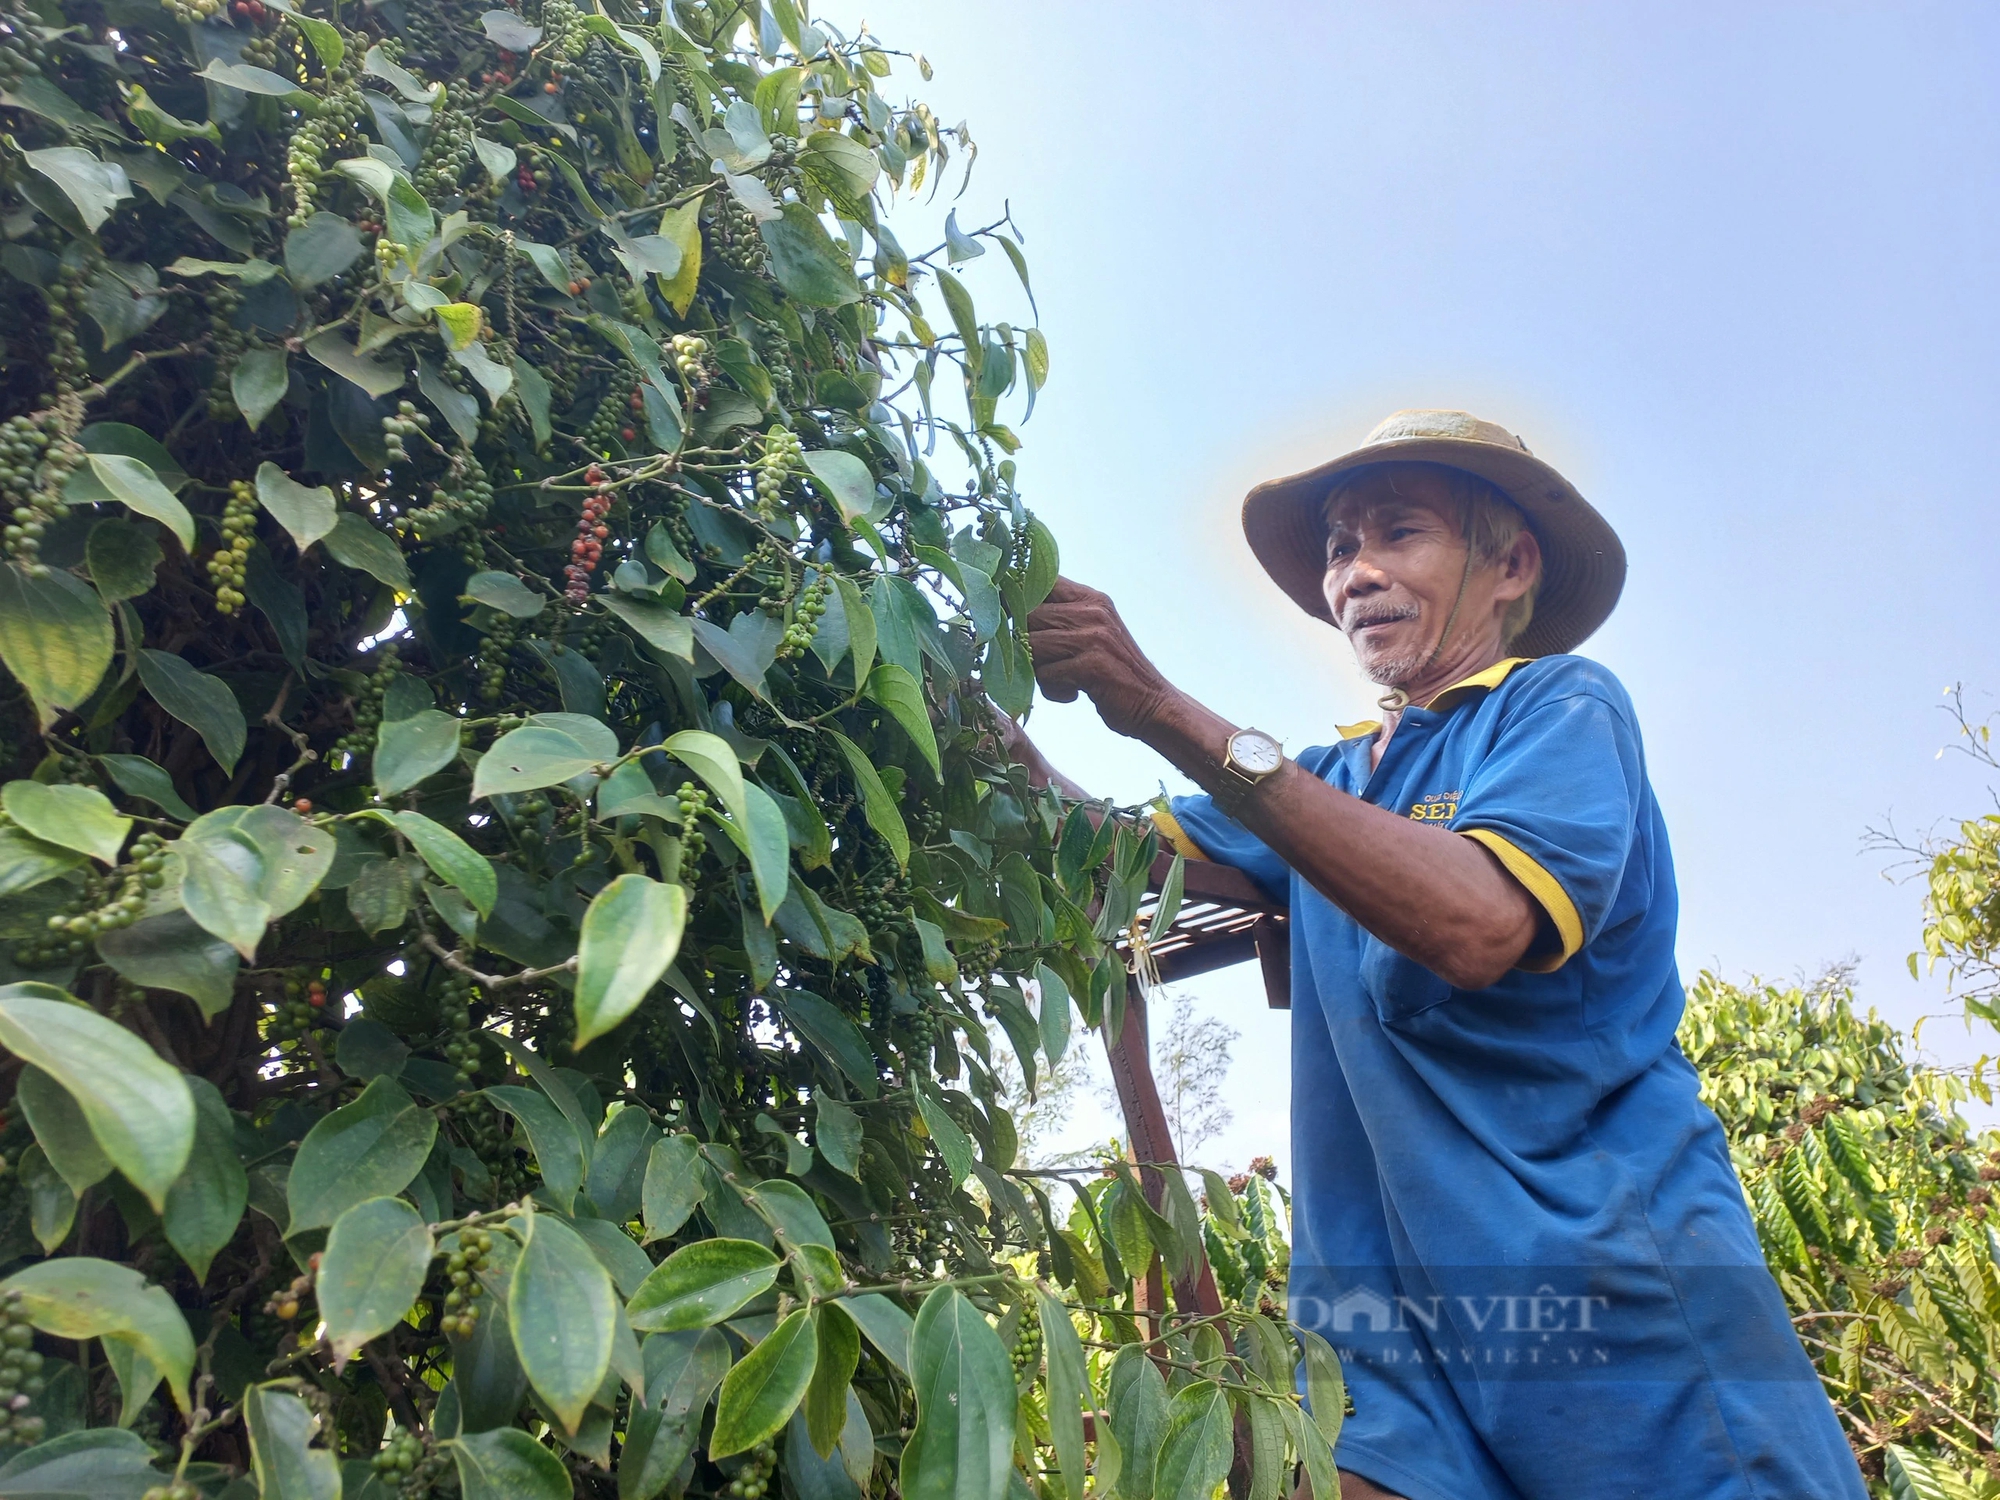 Giá tiêu đột ngột tăng cao, nông dân Gia Lai càng vui hơn vì tiêu được mùa- Ảnh 6.